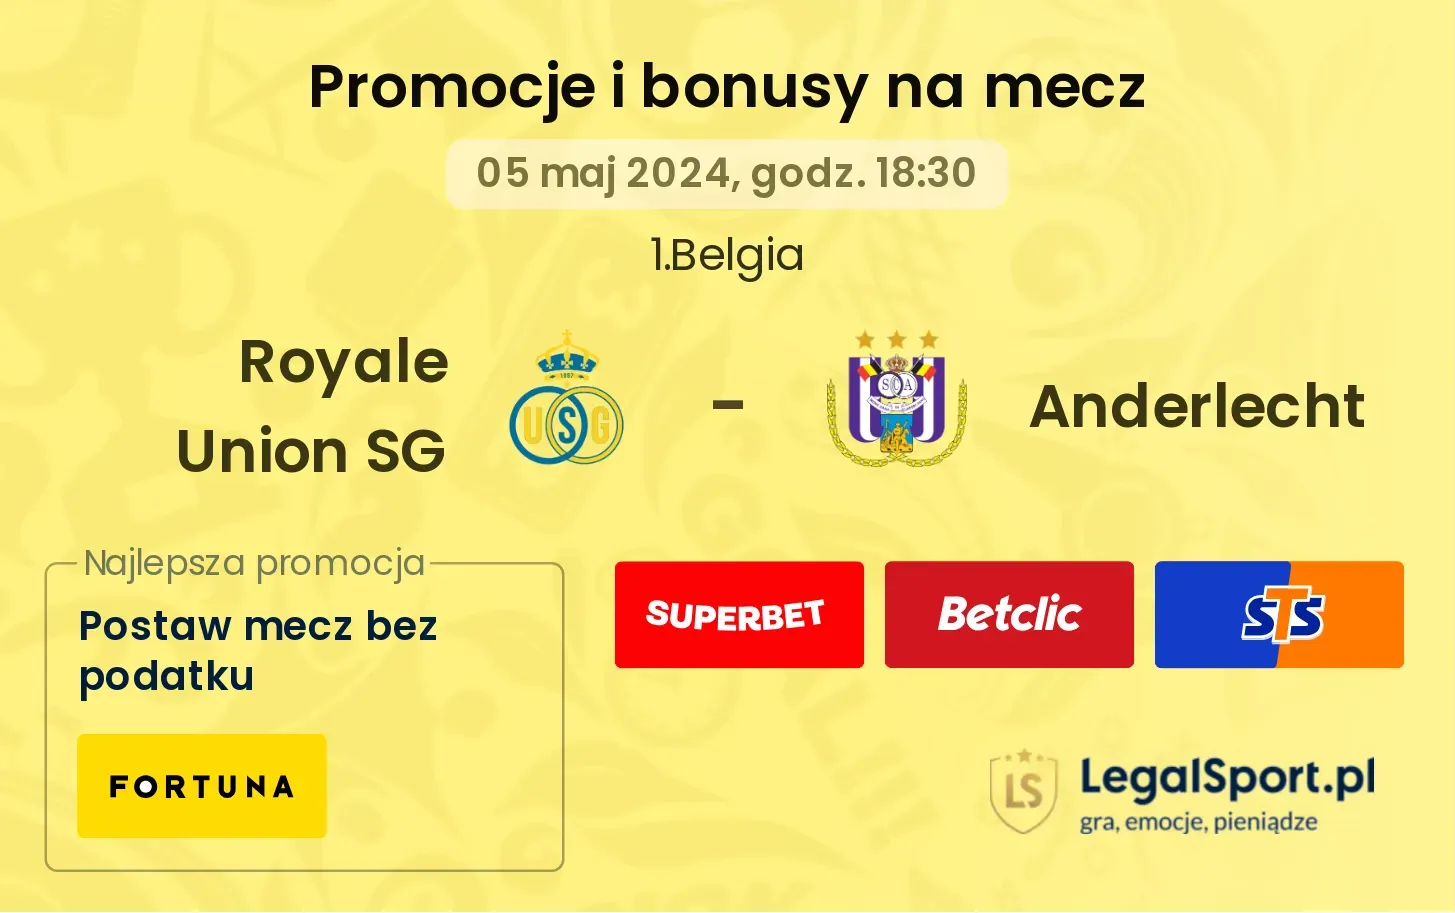 Royale Union SG - Anderlecht promocje bonusy na mecz